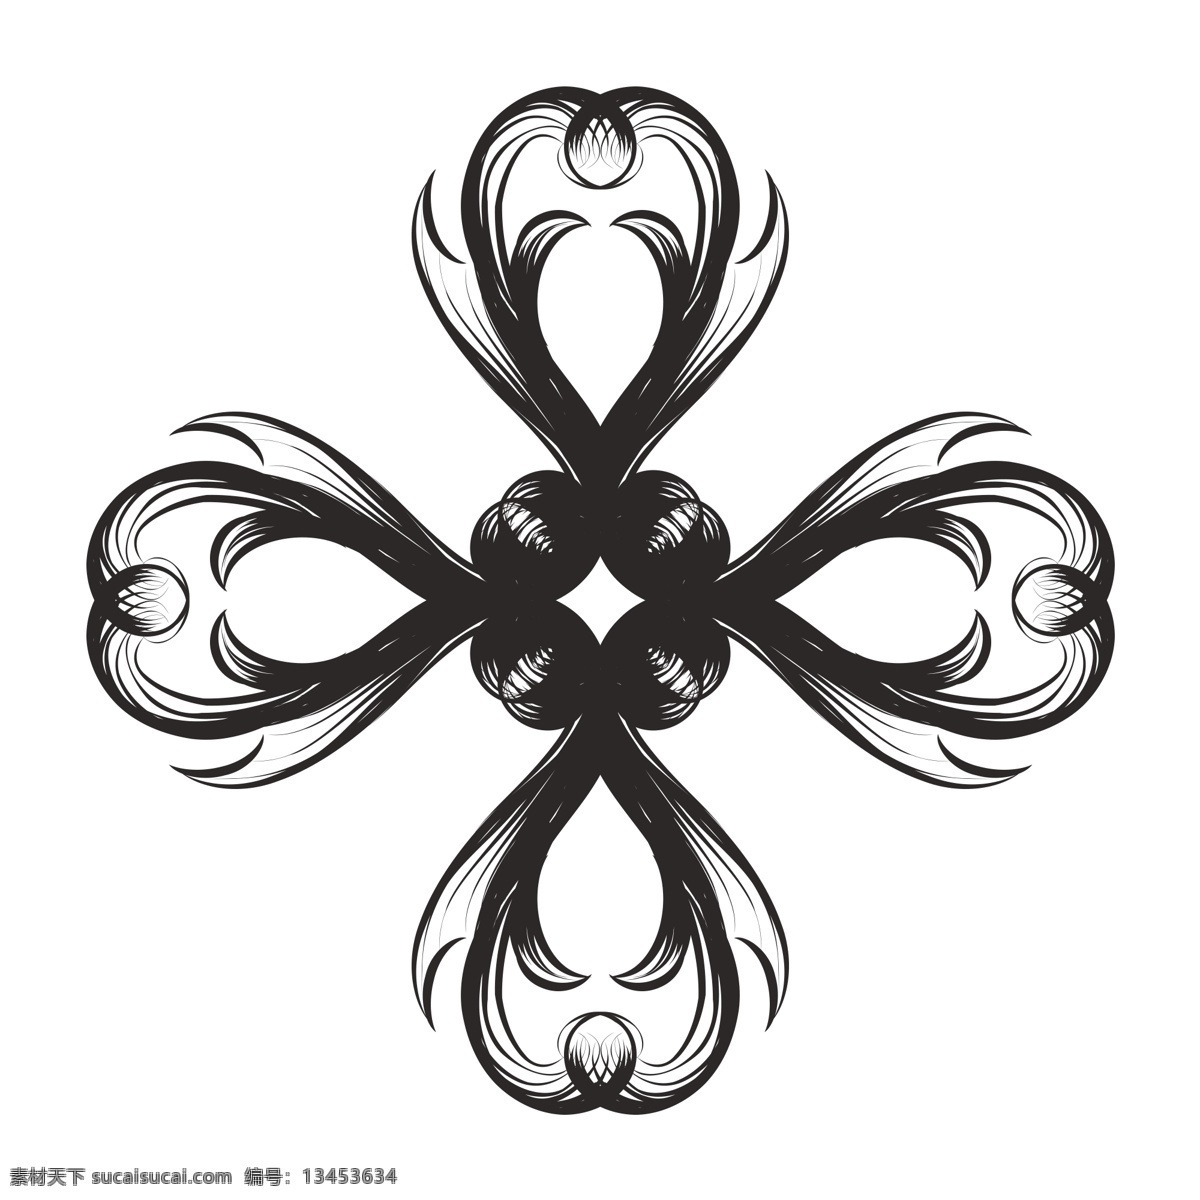 欧式 古风 复古 黑色 花纹 手绘 装饰设计 装饰